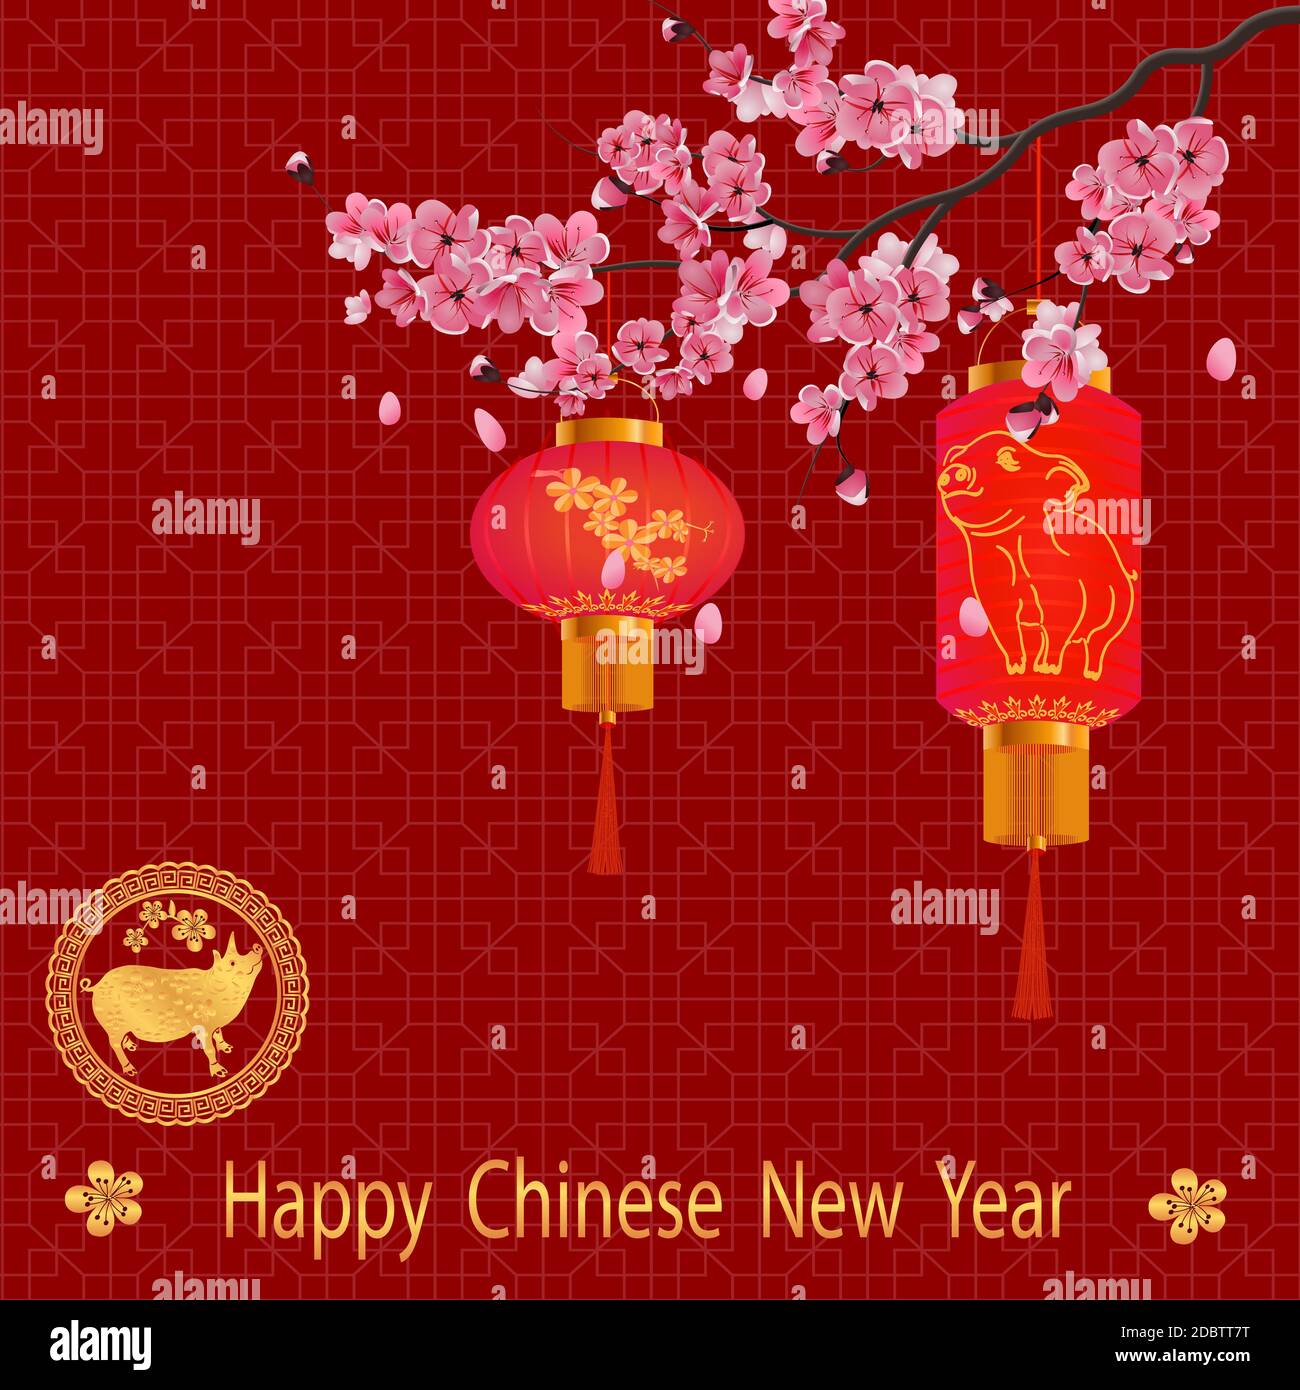 Das chinesische Neujahr. Zwei rote Lichter auf einen Kirschfarbenen Zweig mit lila Blüten, Sakura. Briefmarke mit dem Bild von einem Schwein. Vector Illustration Stockfoto